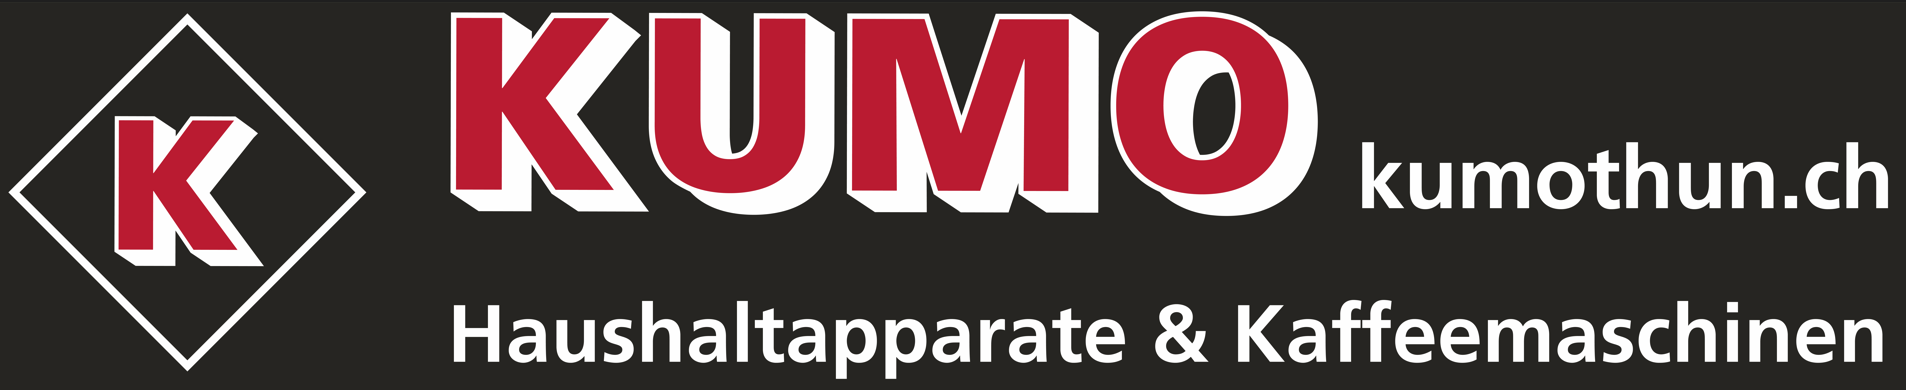 KUMO Kurt Moser GmbH